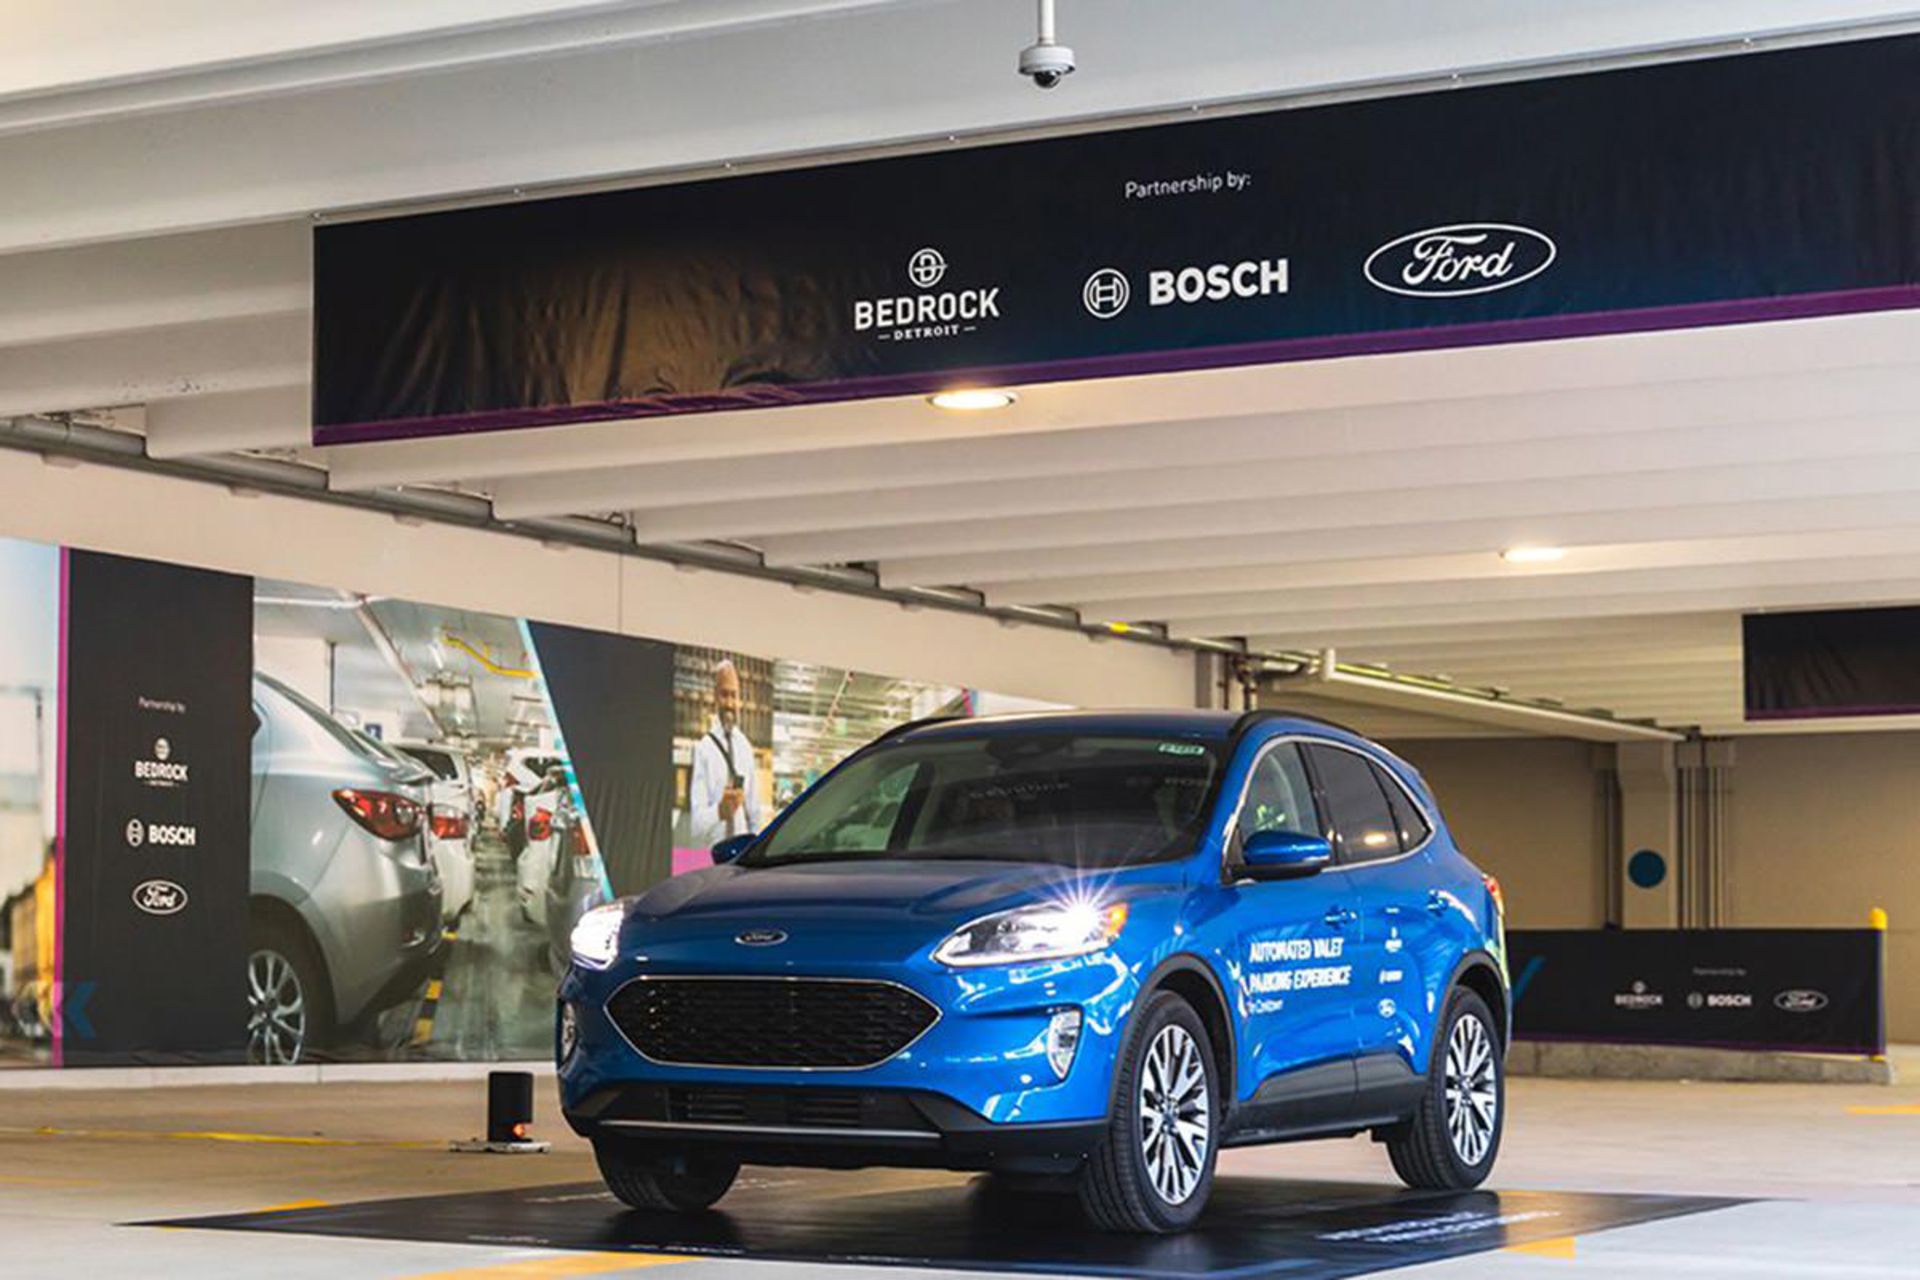 خودرو شاسی بلند / suv فورد اسکیپ آبی رنگ مجهز به سیستم دستیار پارک خودکار بوش / Ford Bosch automated valet parking